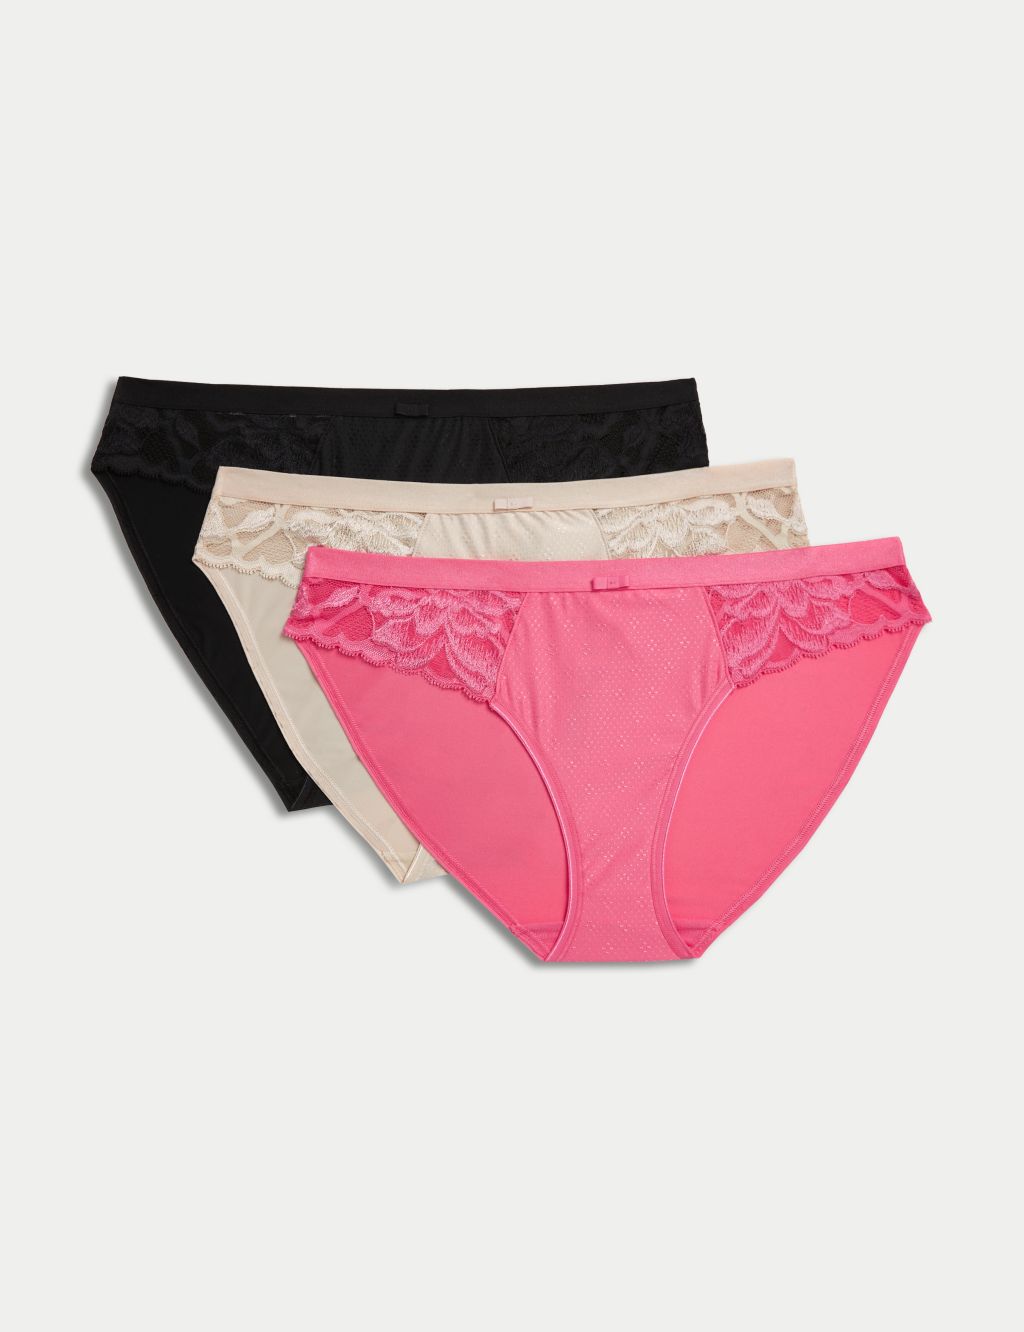 SGAOGEW Women's Sexy Briefs Low Waist Panties for Women UK Sale